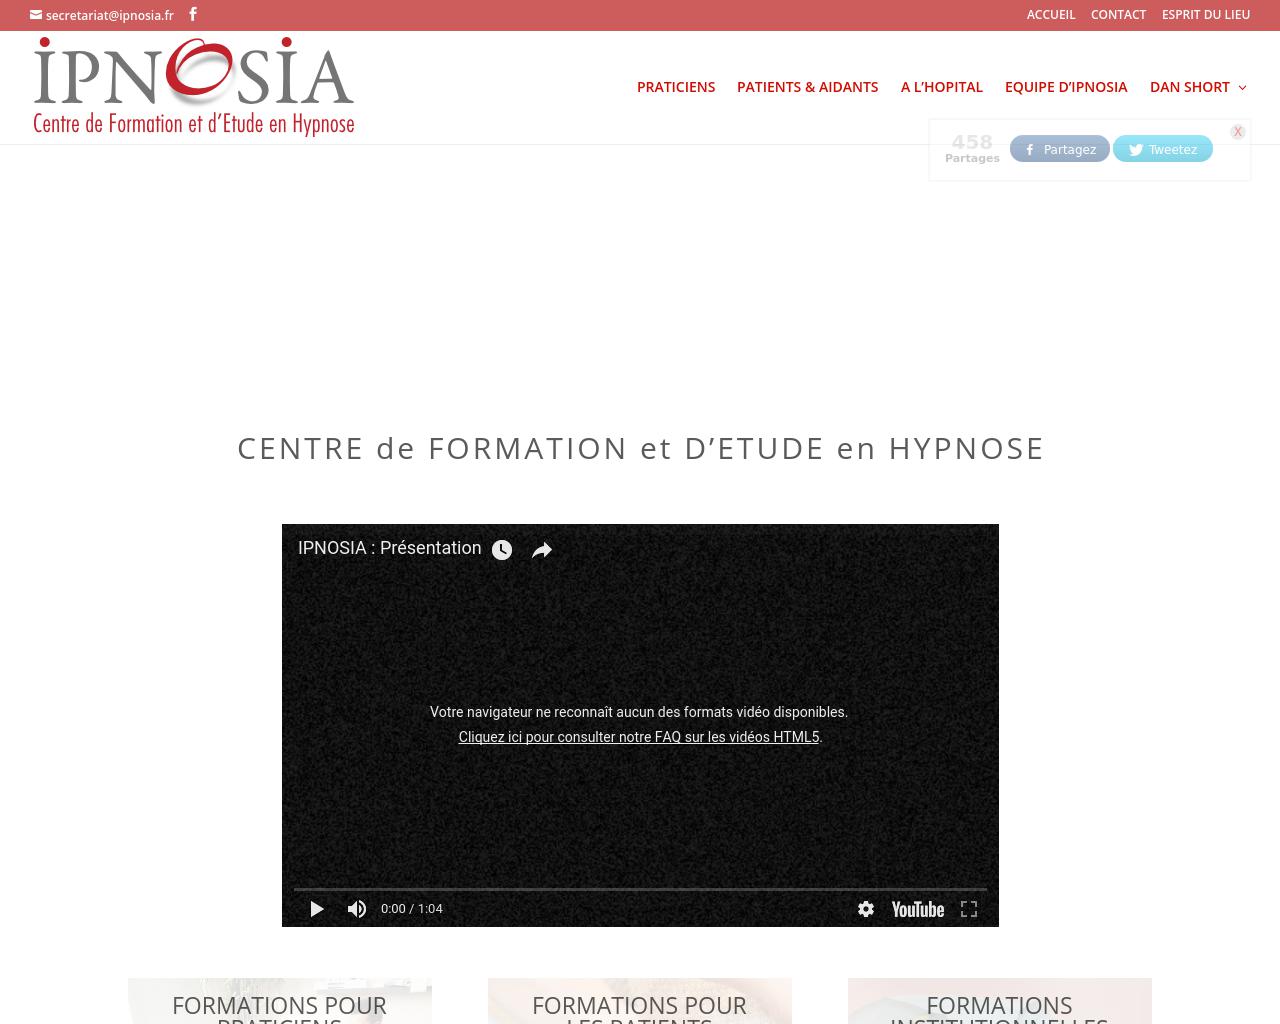 IPNOSIA, formation à l'hypnose pour praticiens et patients